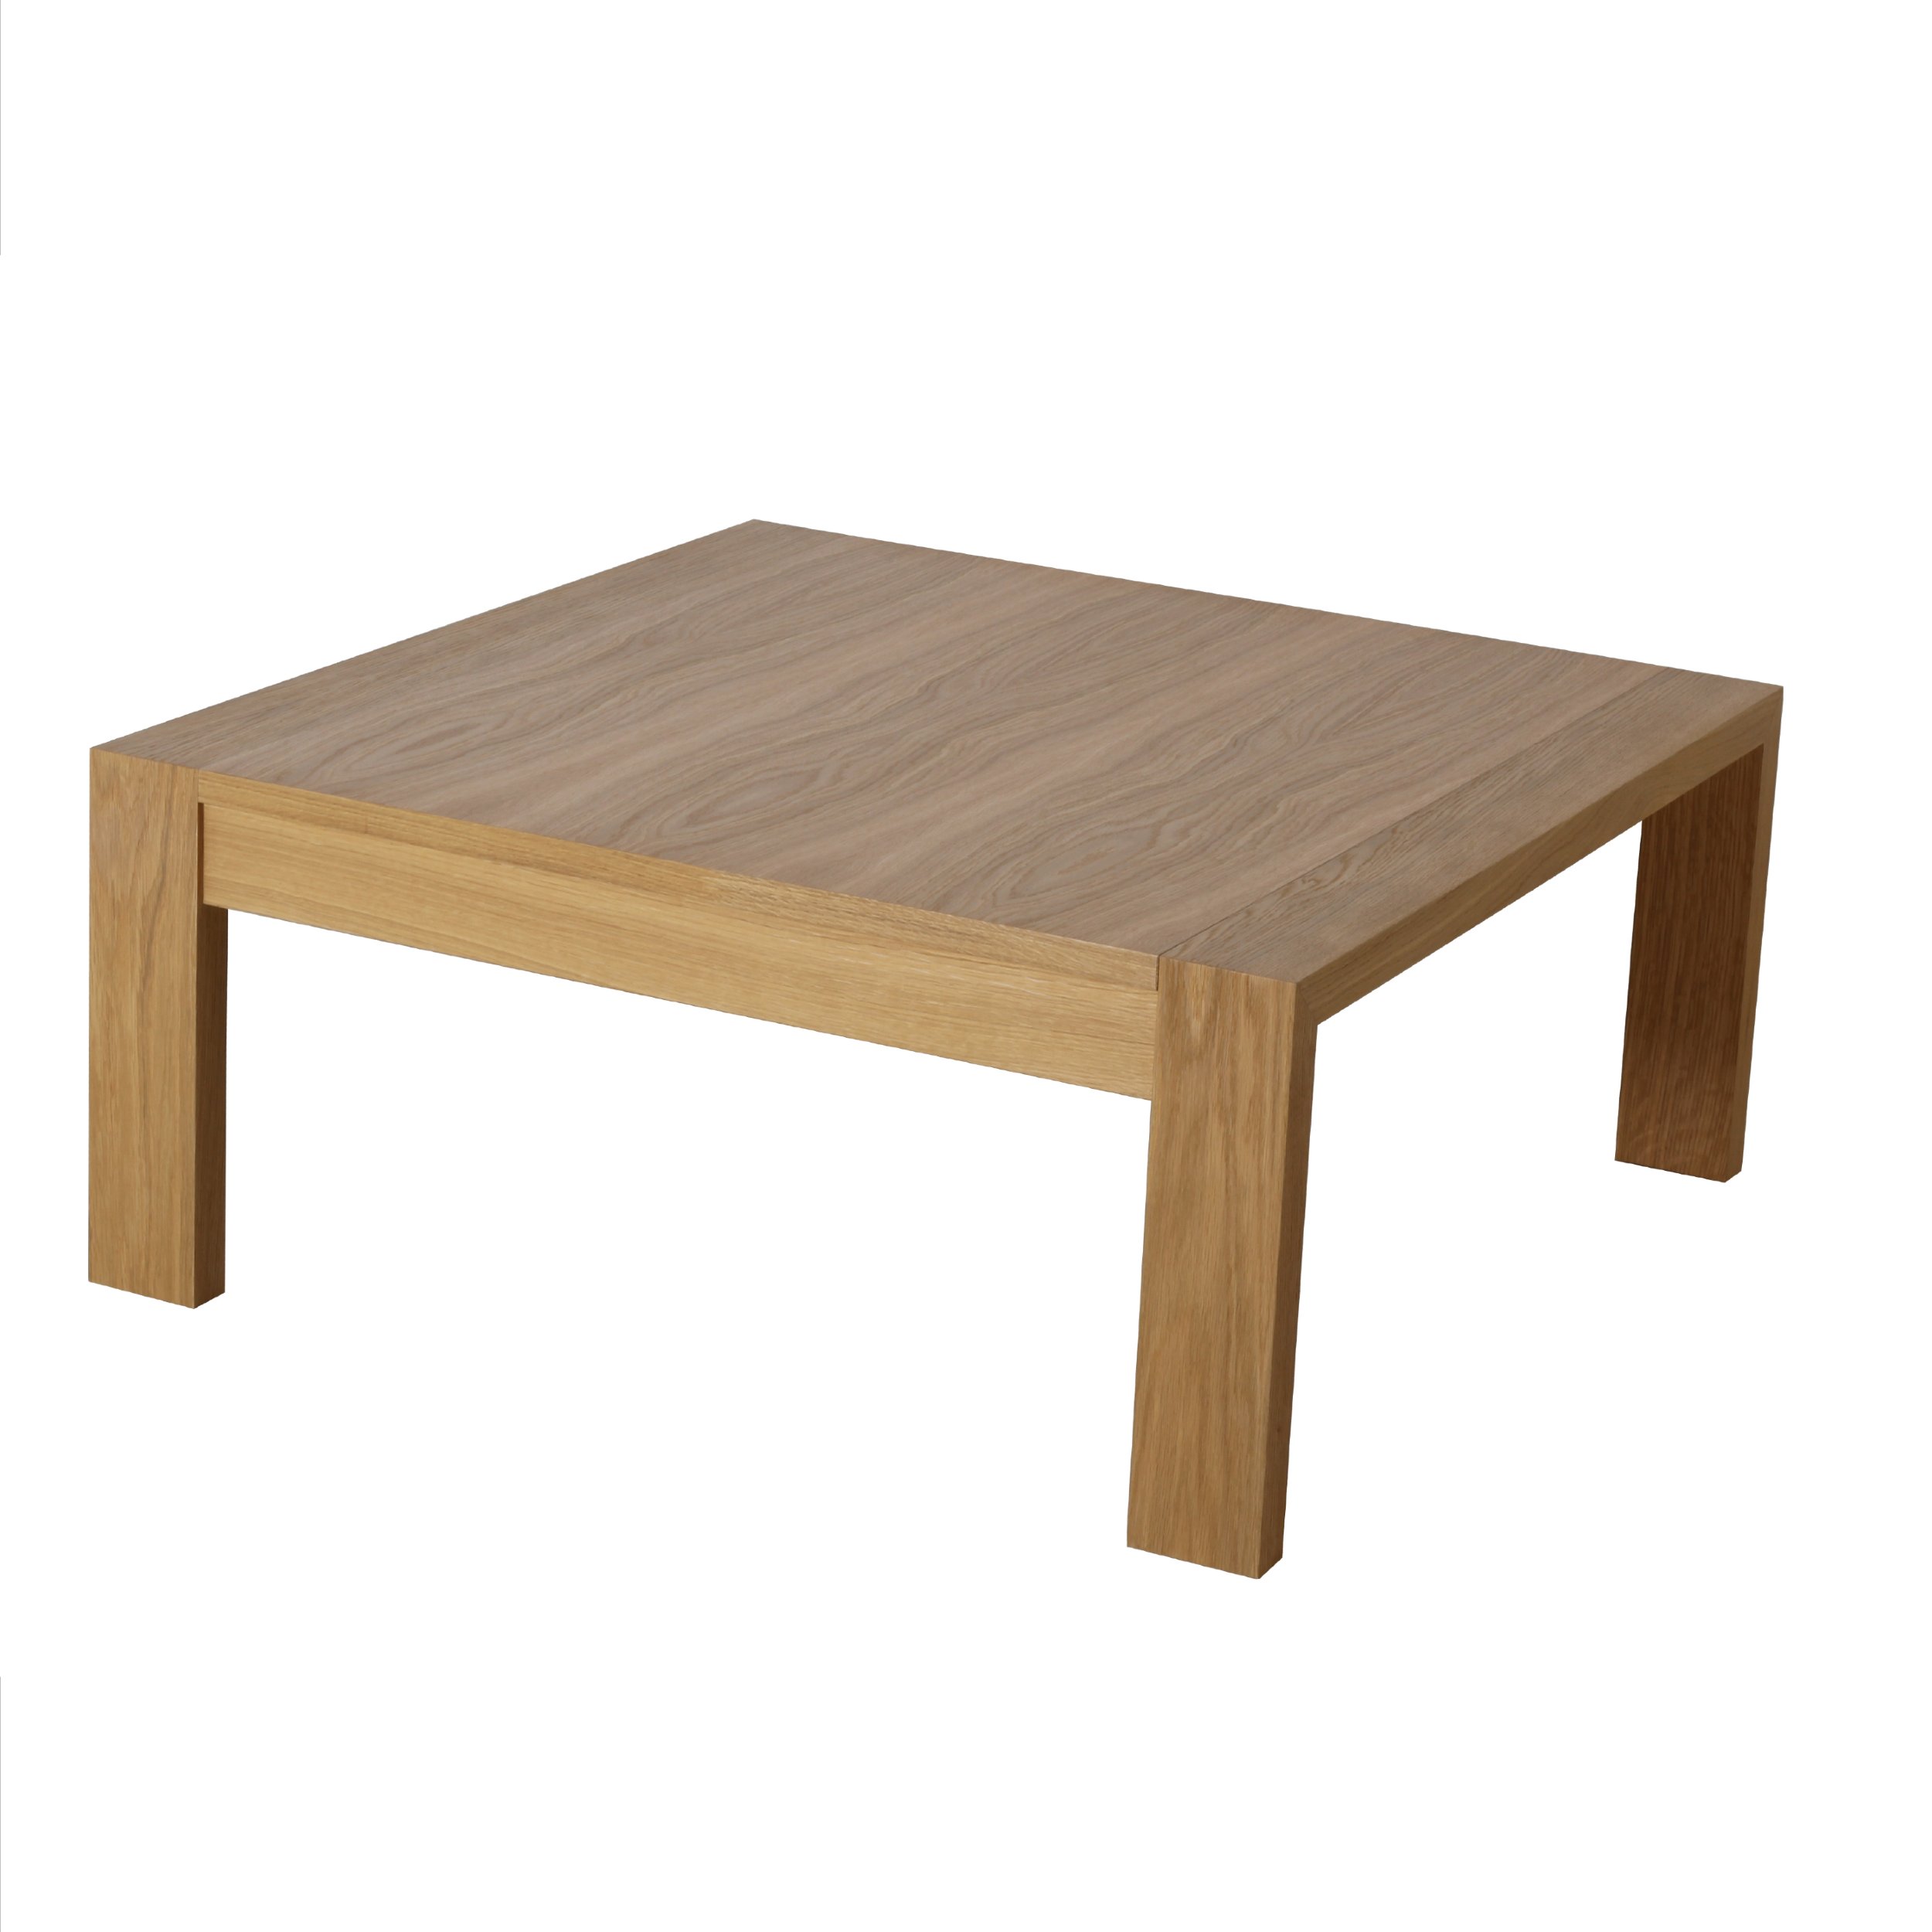 Table basse carrée, ronde ou rectangulaire au meilleur prix, Table basse  transformable SU & GIÙ Bois Wild Chêne Tabac